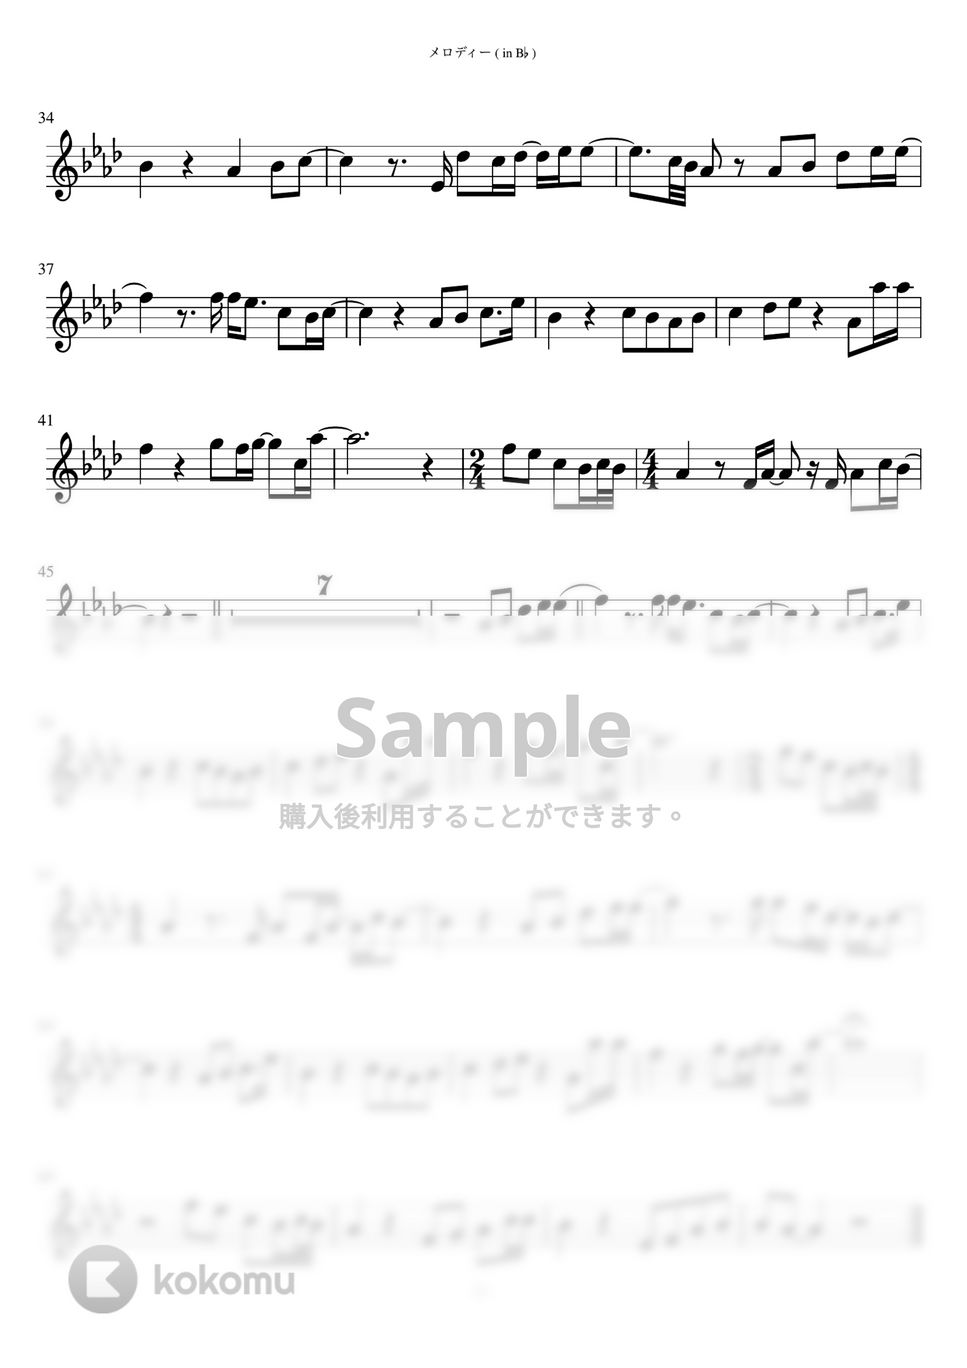 玉置浩二 - メロディー (in B♭) by inojunCH